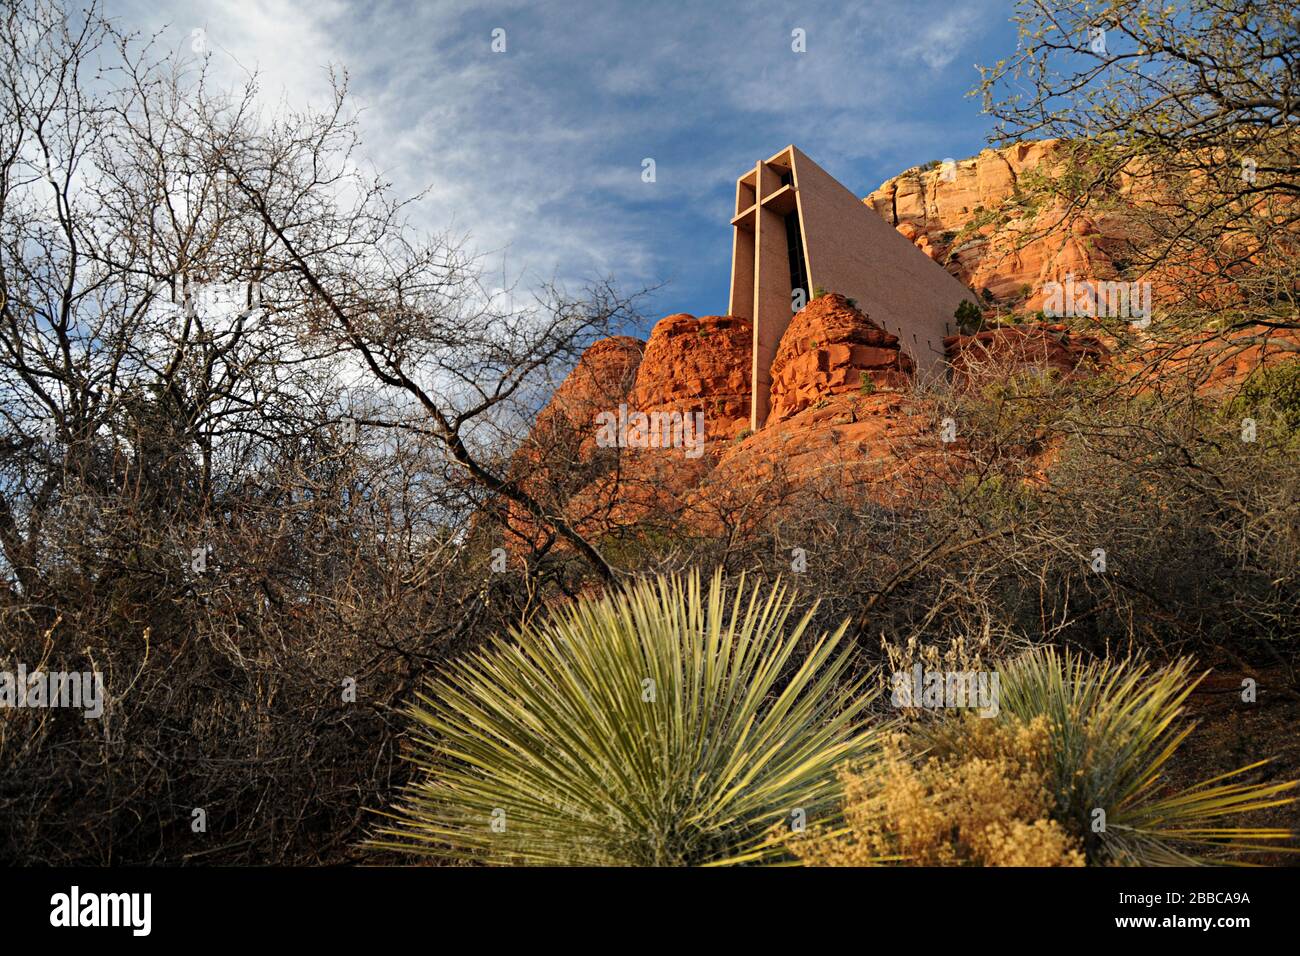 Chapel of the Holy Cross, Sedona, Arizona, USA Stock Photo